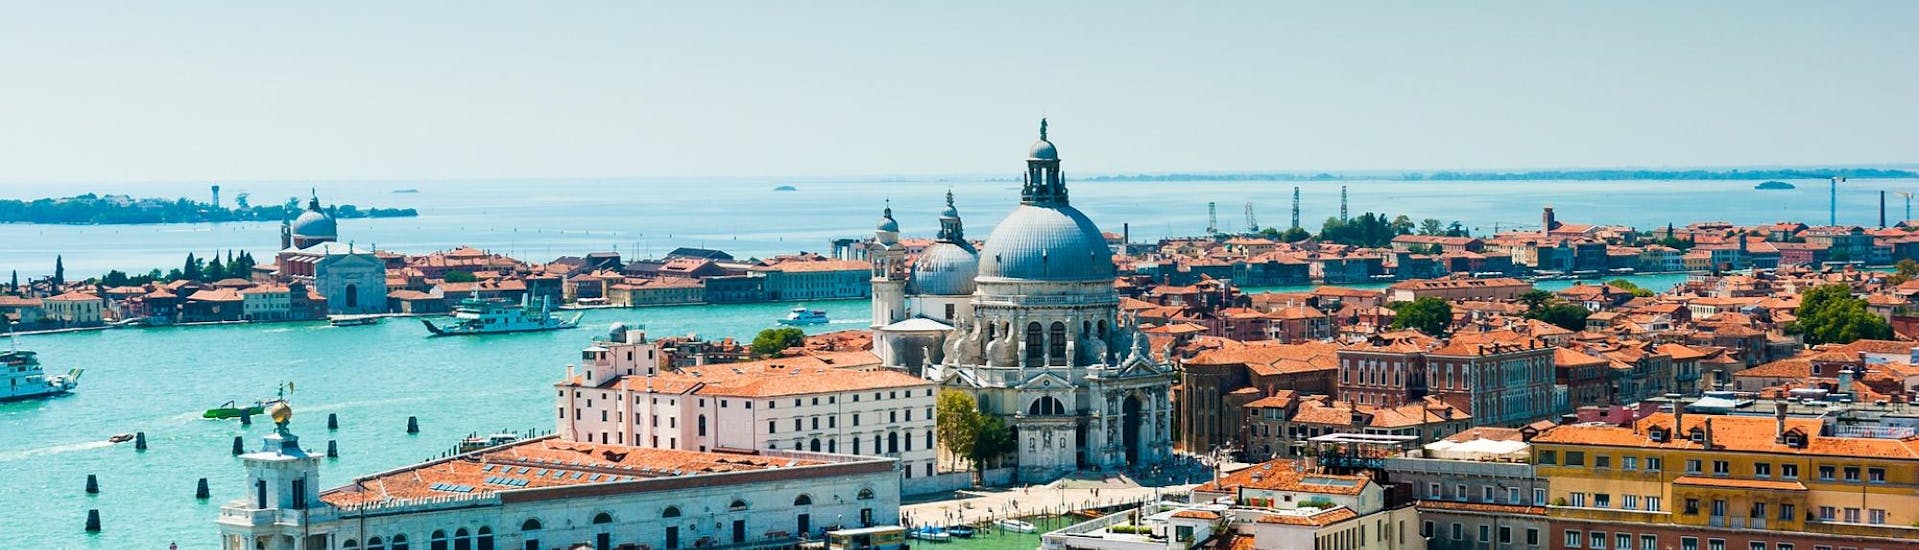 Panoramablick auf Venedig, die Ihr während der Bootsfahrt nach Murano & Burano mit Morgen in Venedig mit Il Doge di Venezia besuchen könnt.